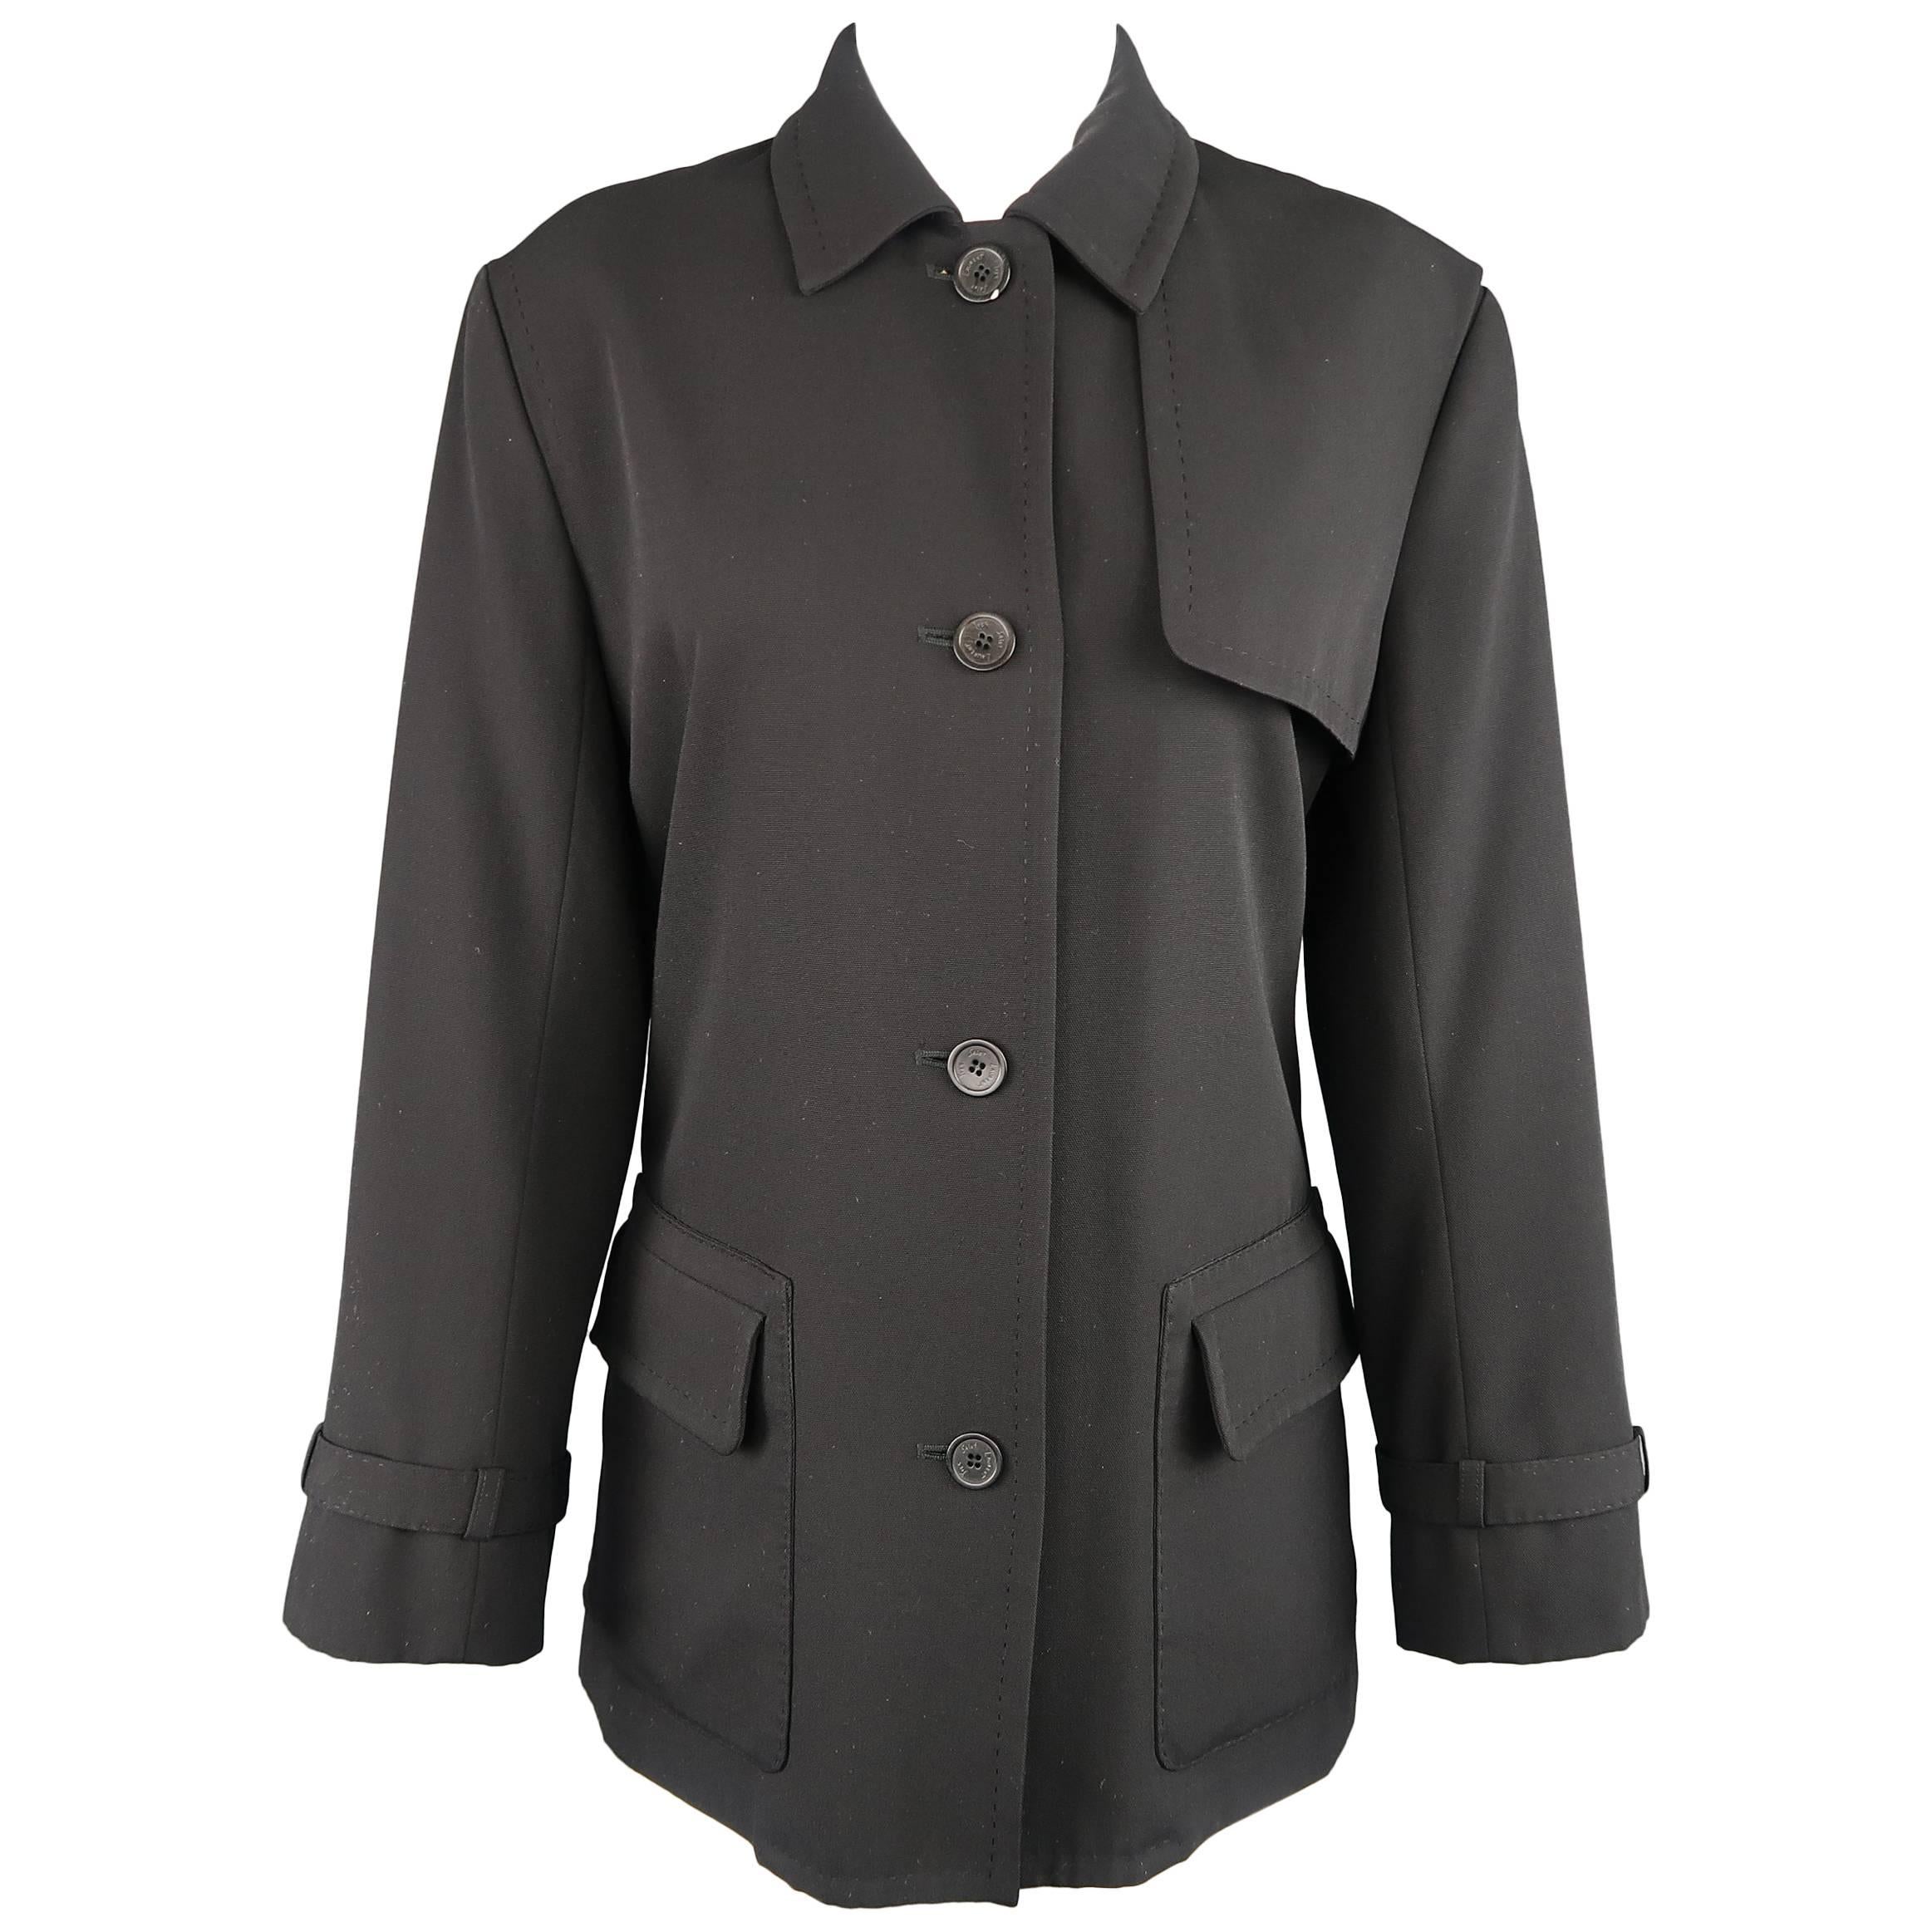 YVES SAINT LAURENT Size 4 Black Top Stitch Wool Blend Storm Flap Jacket